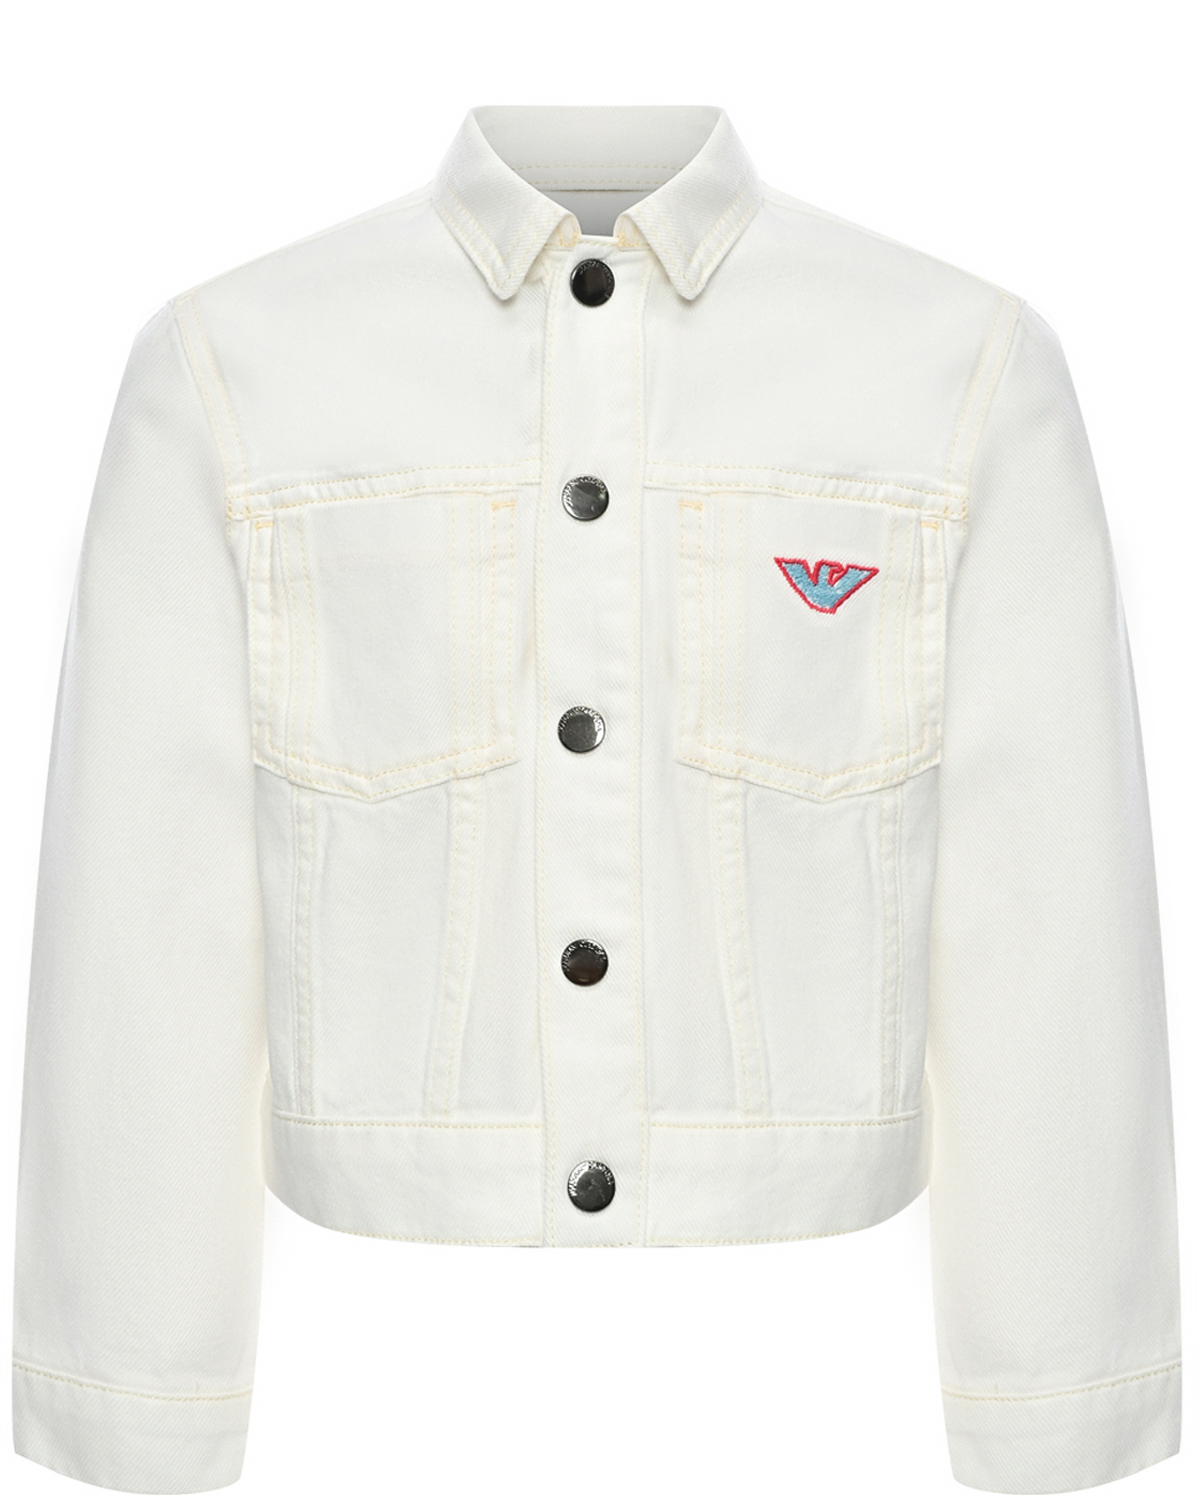 Джинсовая куртка, белая Emporio Armani, размер 104, цвет белый